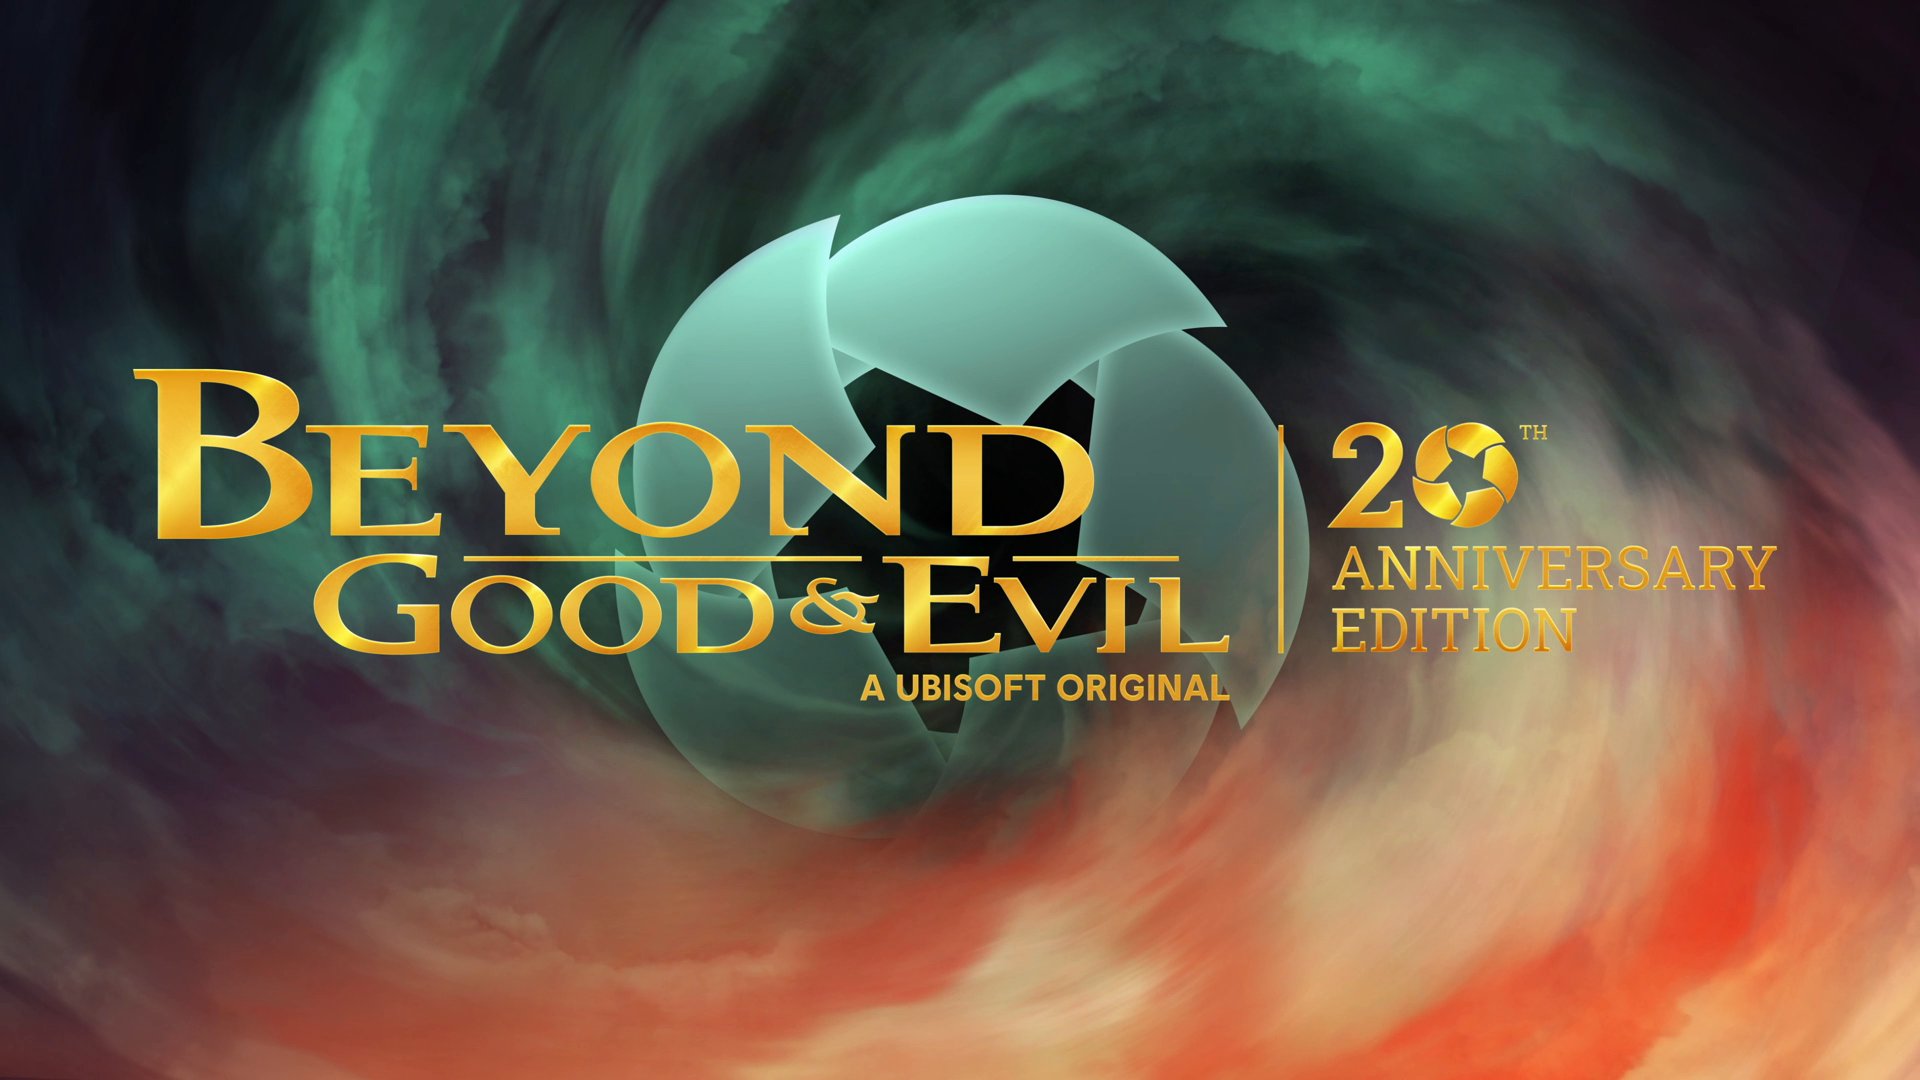 Die Beyond Good & Evil 20th Anniversary Edition erscheint am 25. Juni für PS5, Xbox Series, PS4, Xbox One, Switch und PC